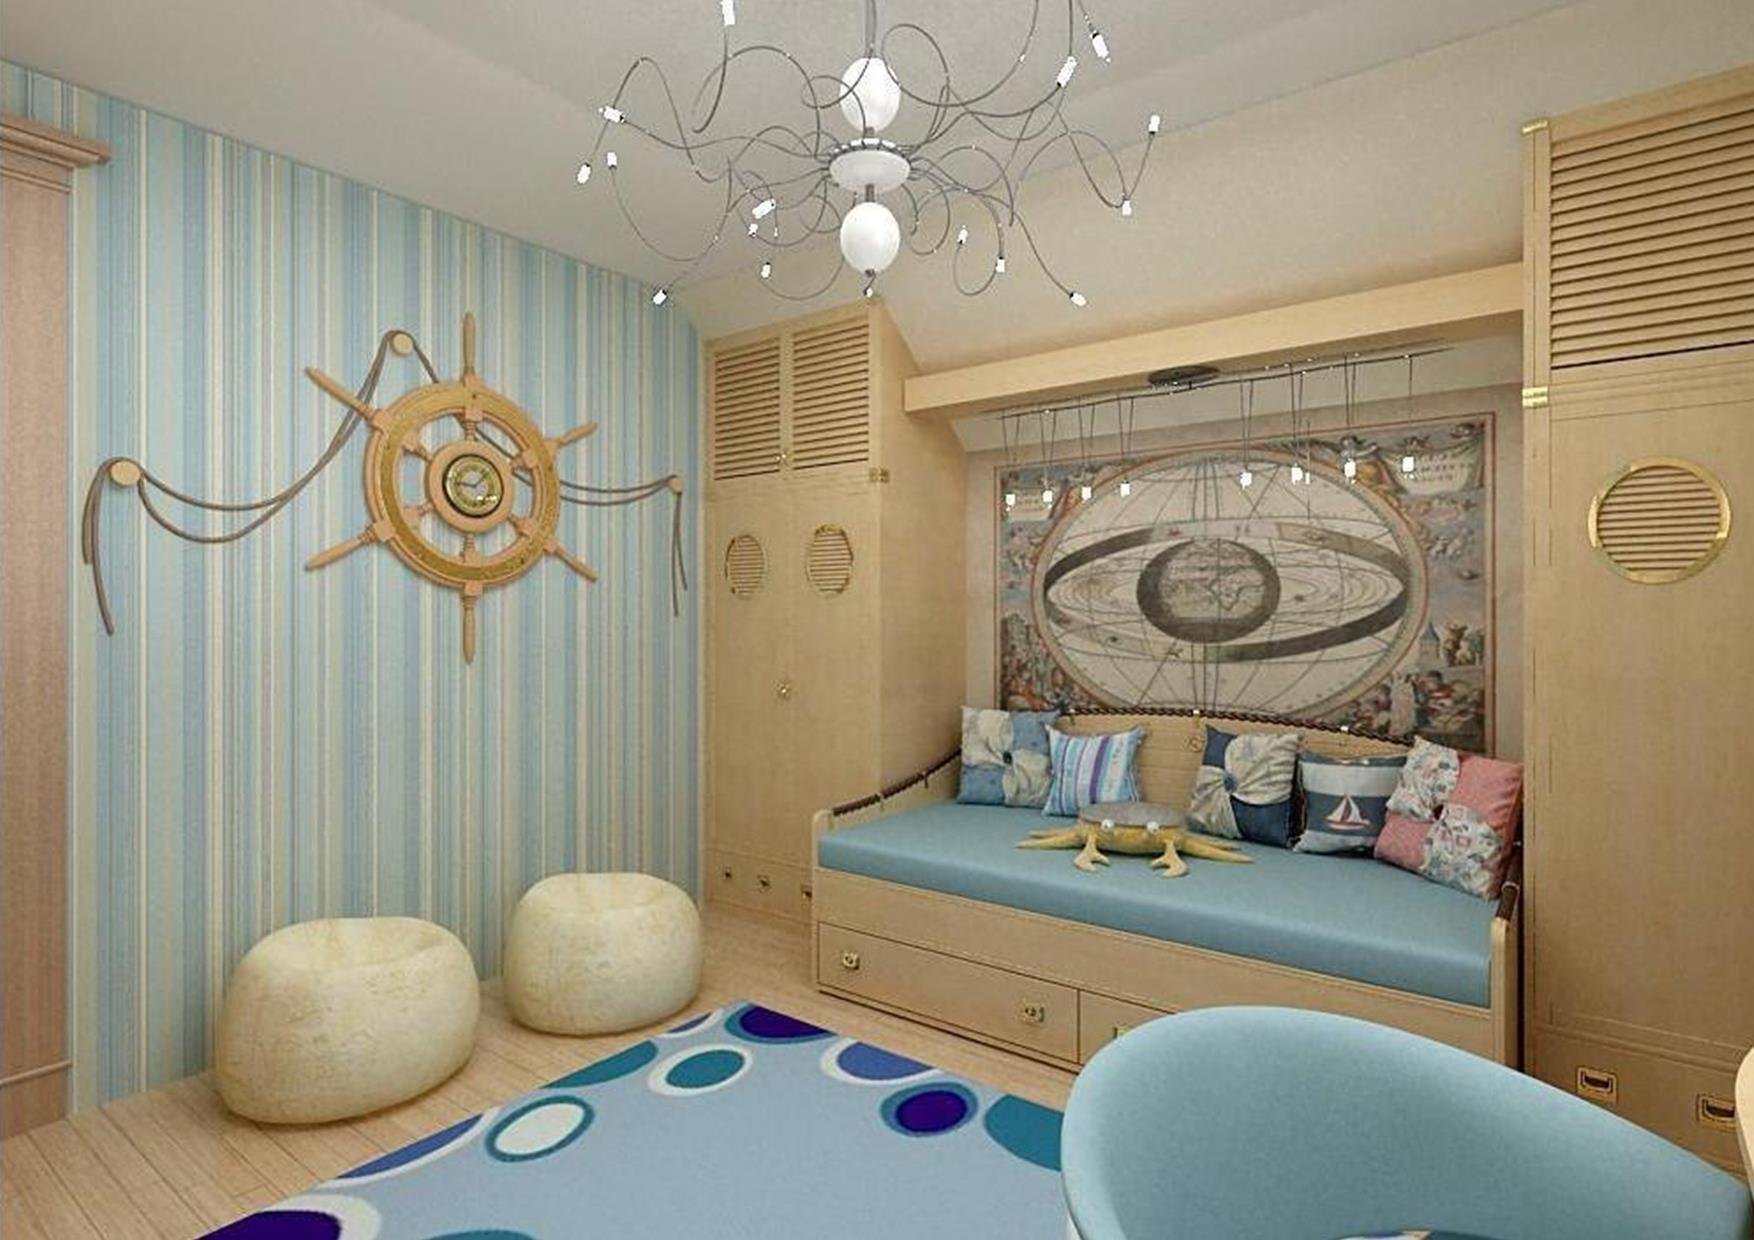 Ребенок дизайнер интерьера. Детская в морском стиле. Детская комната в морском стиле. Морской стиль в интерьере. Комната в морском стиле для мальчика.